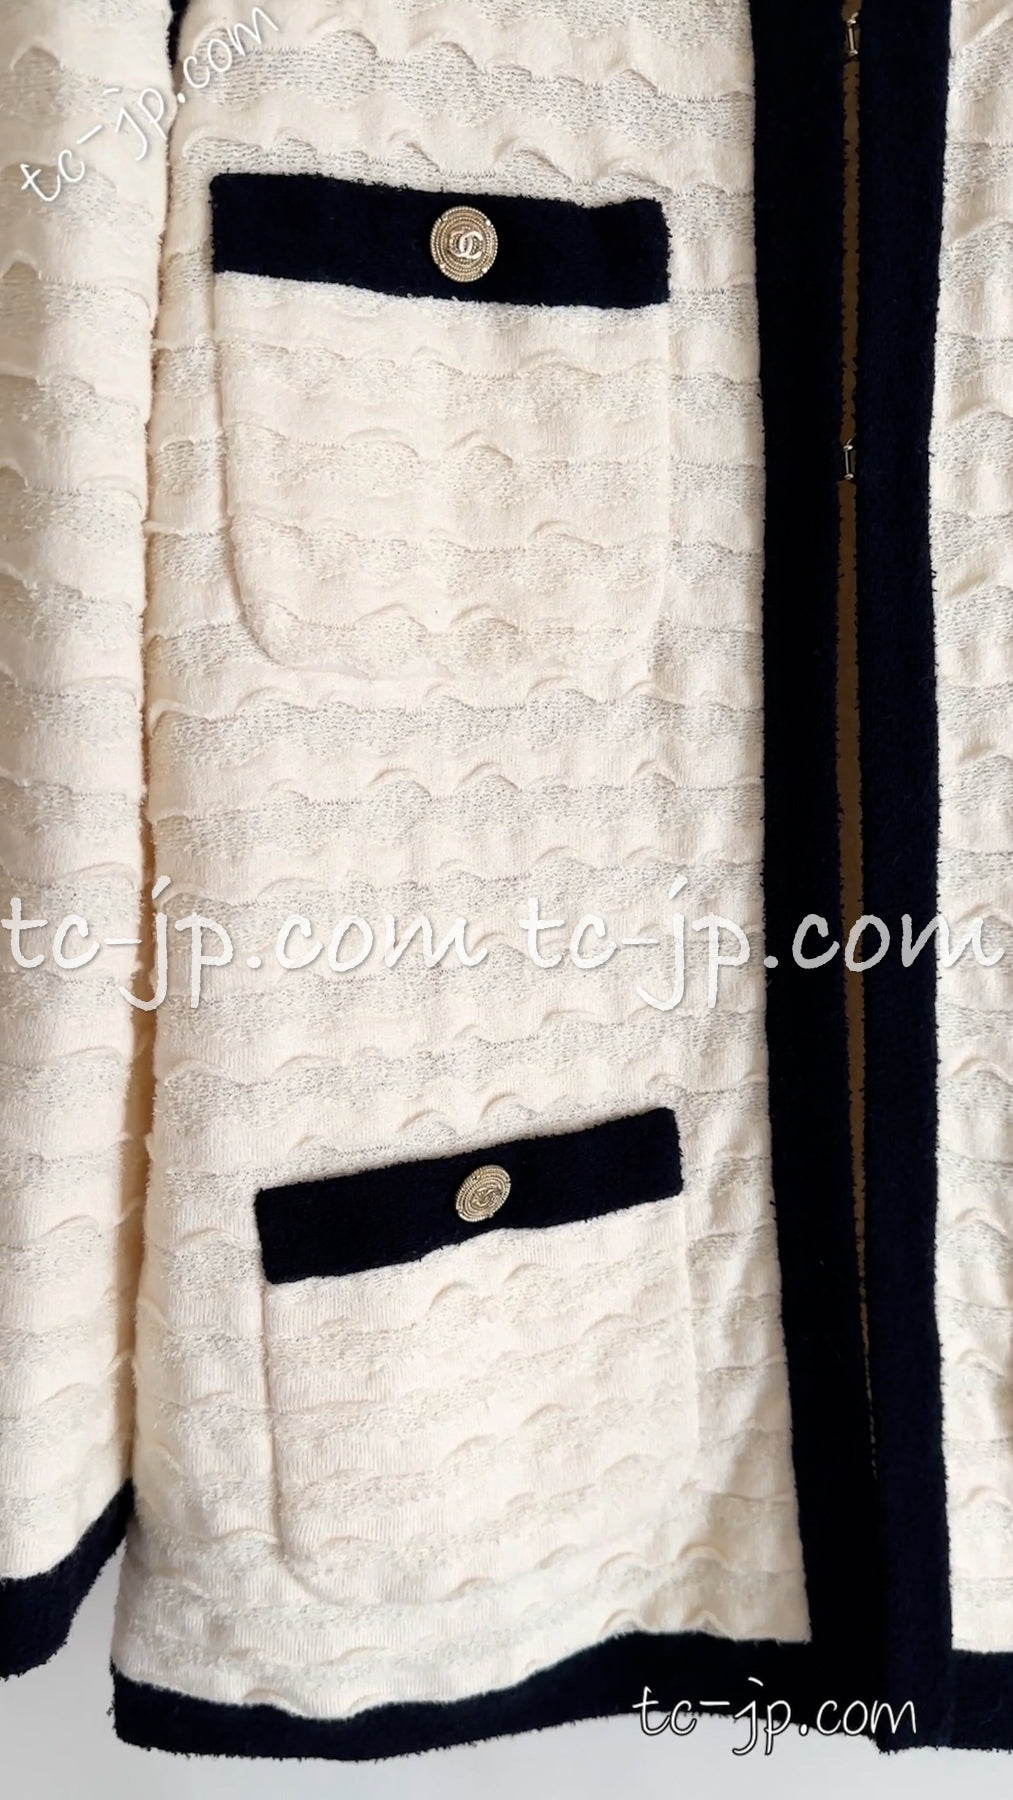 CHANEL 12C Ivory Cotton Cashmere Knit Dress Cardigan 38 42 シャネル アイボリー・カシミア混コットン・ワンピース・カーディガン 即発